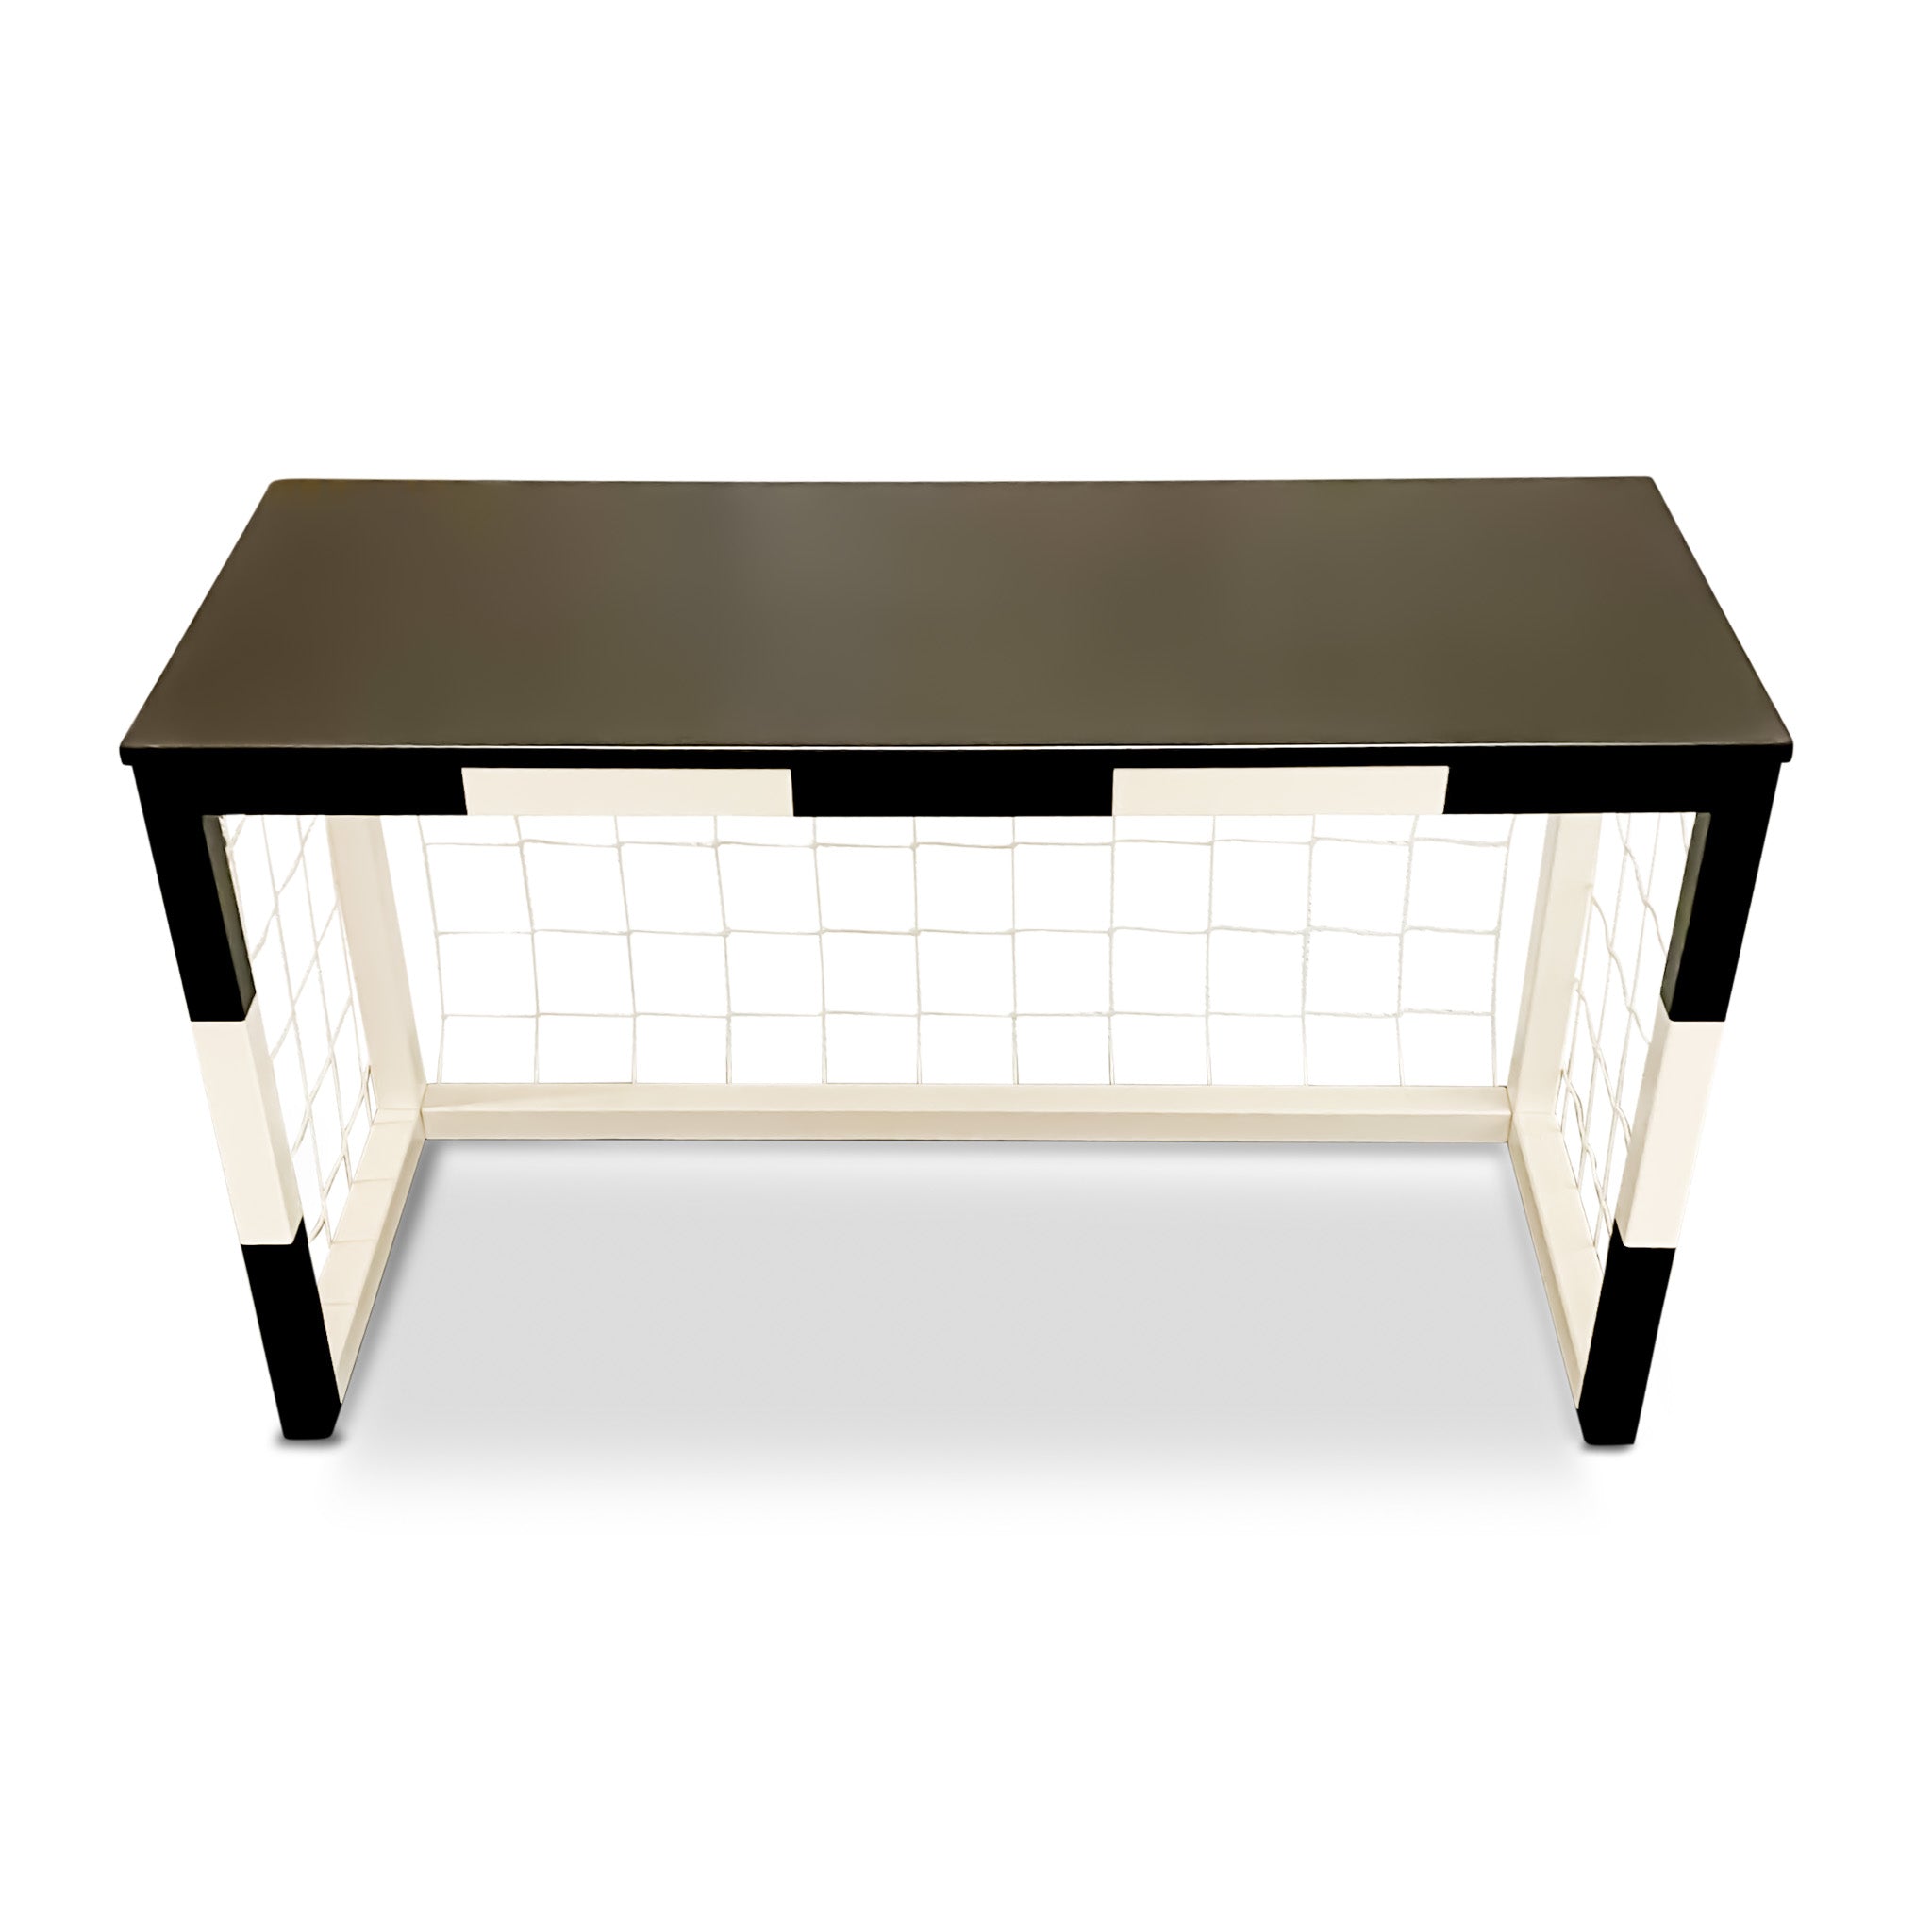 Wooden desk children's room  | Football goal desk with net - white/black